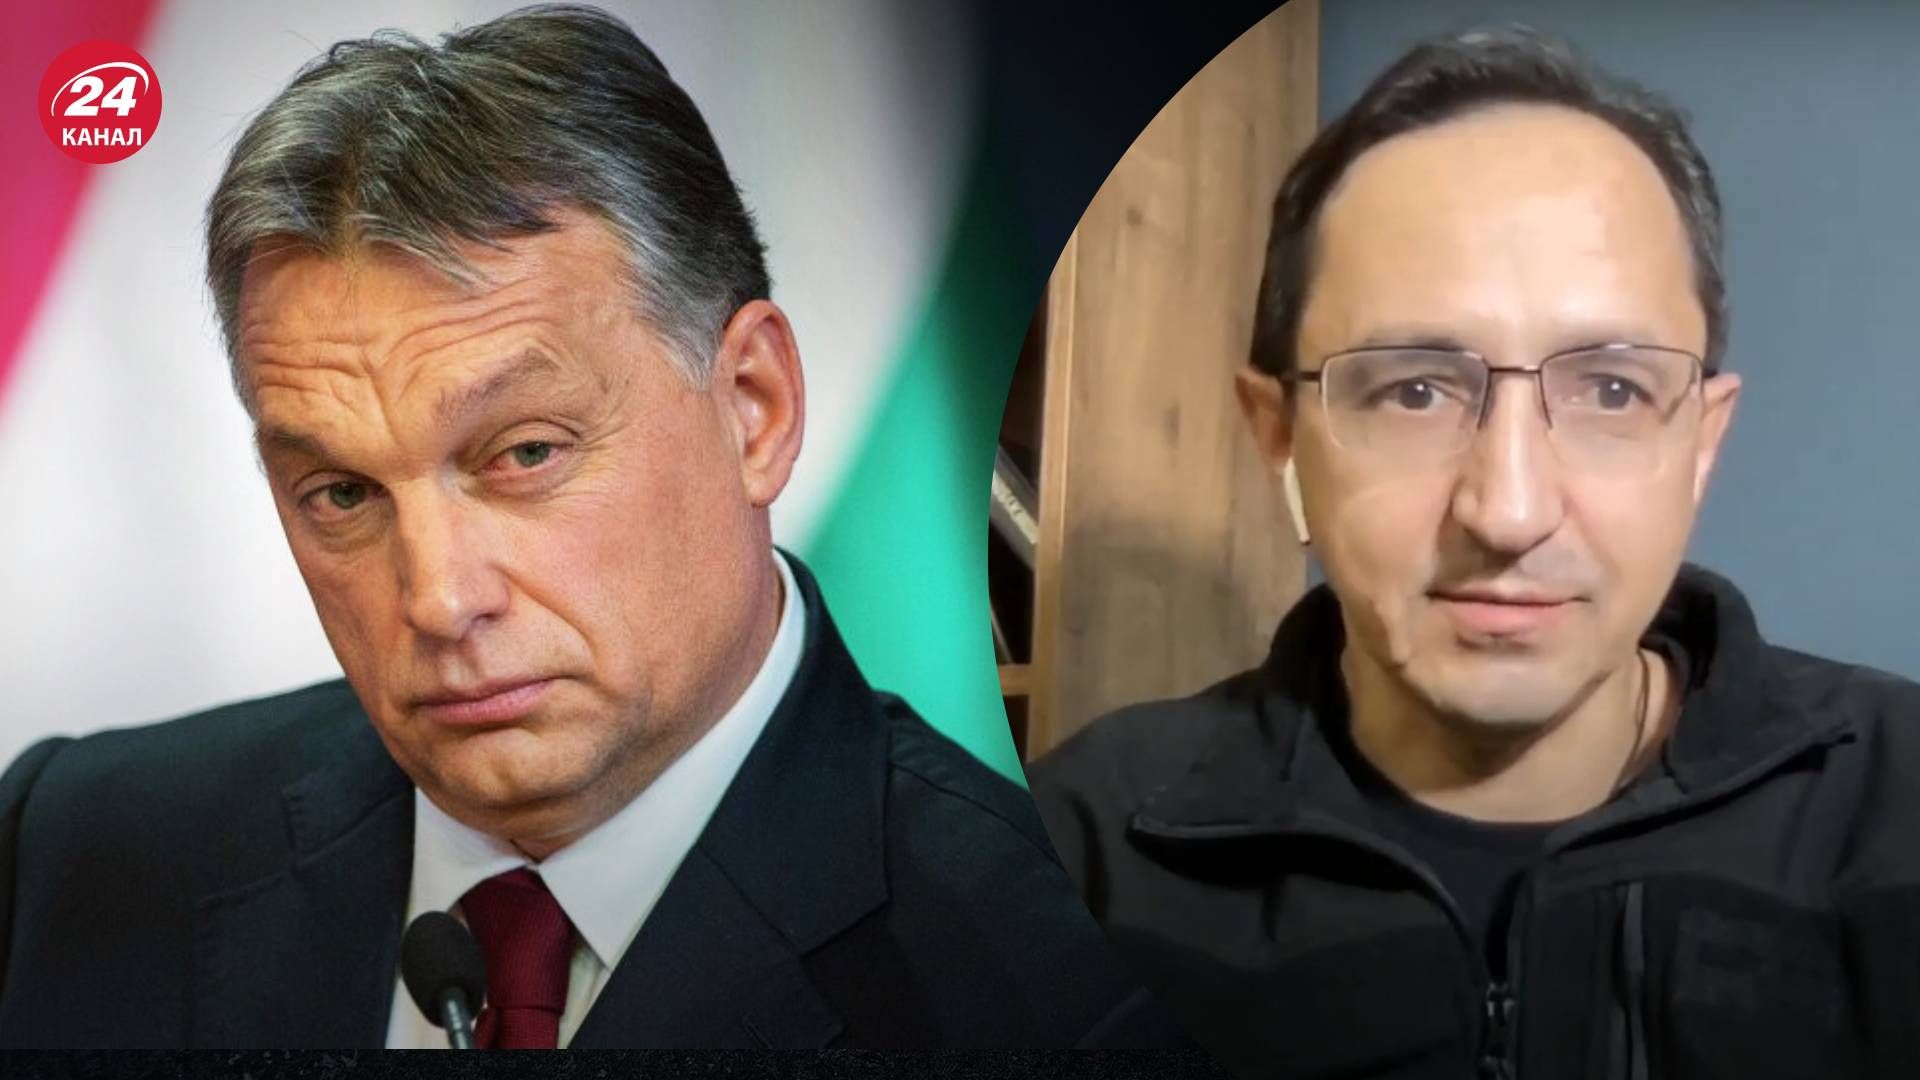 Віктор Орбан приїде до України - Клочок пояснив, що це означає - 24 Канал